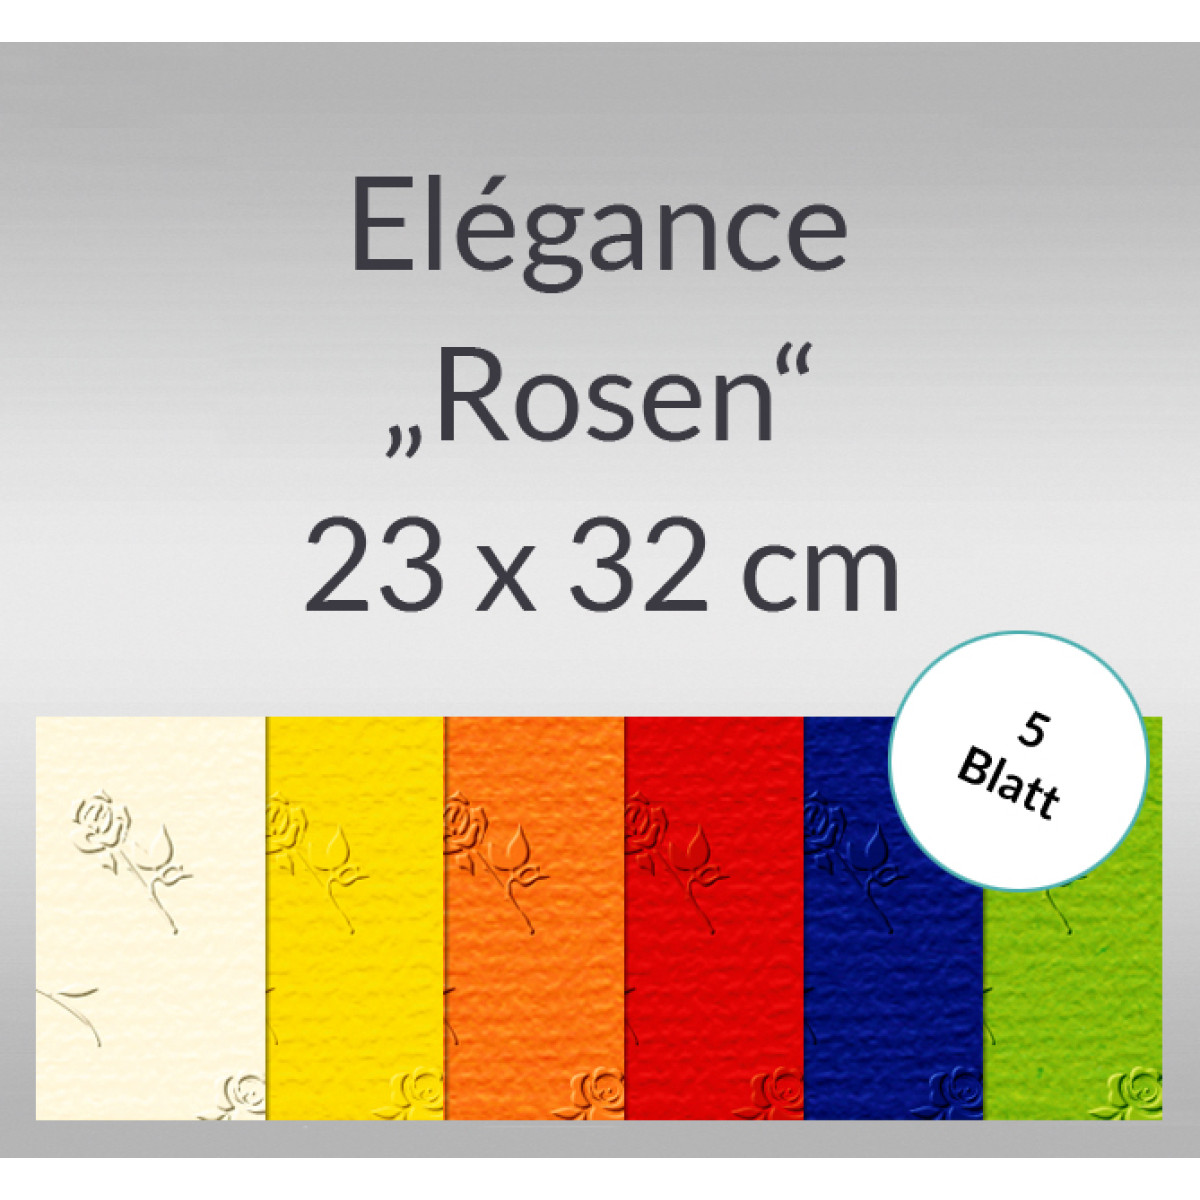 Elegance "Rosen" 220 g/qm 23 x 32 cm - 5 Blatt